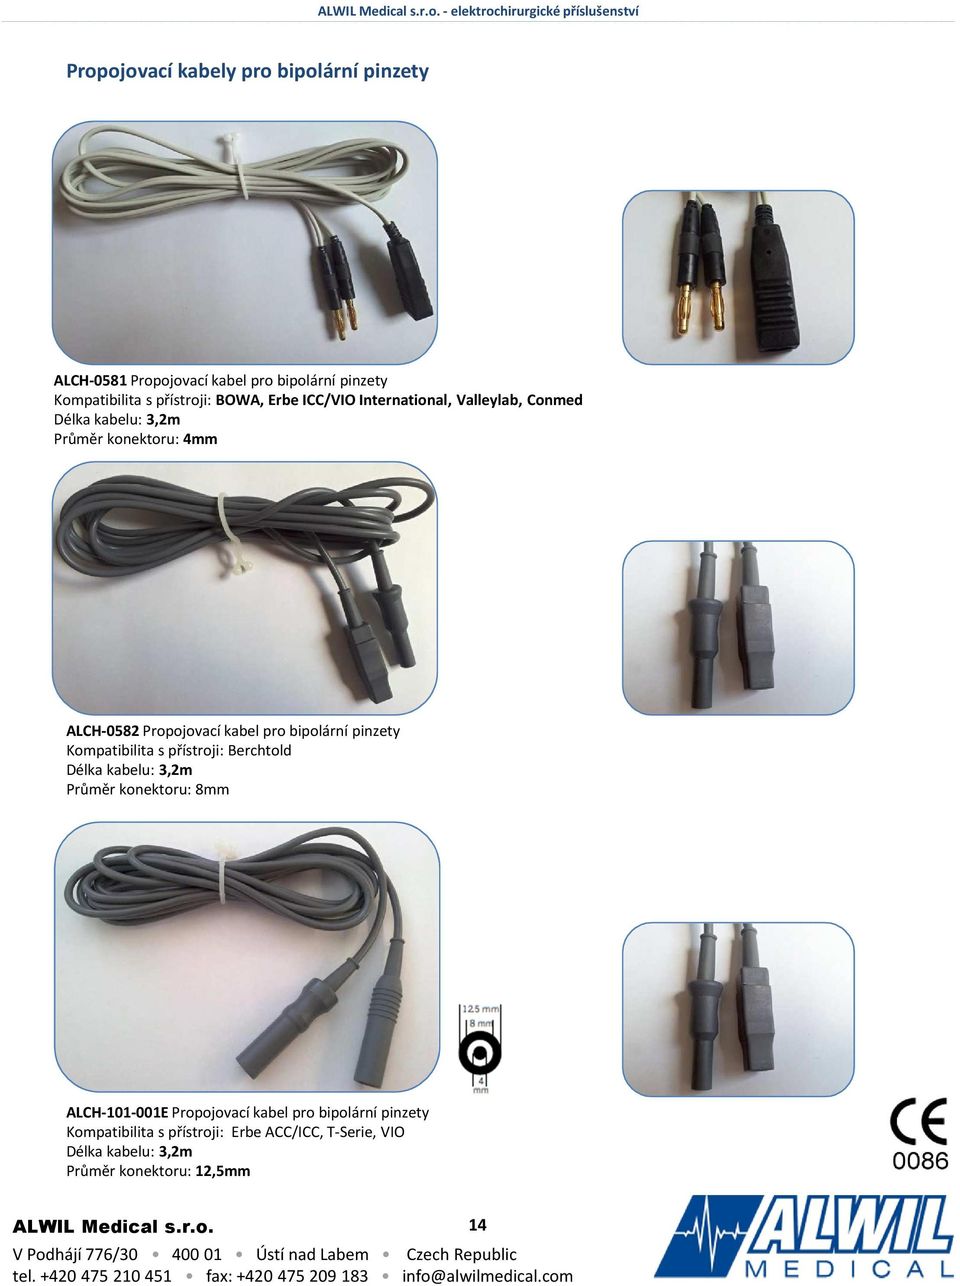 Propojovací kabel pro bipolární pinzety Kompatibilita s přístroji: Berchtold Délka kabelu: 3,2m Průměr konektoru: 8mm ALCH-101-001E